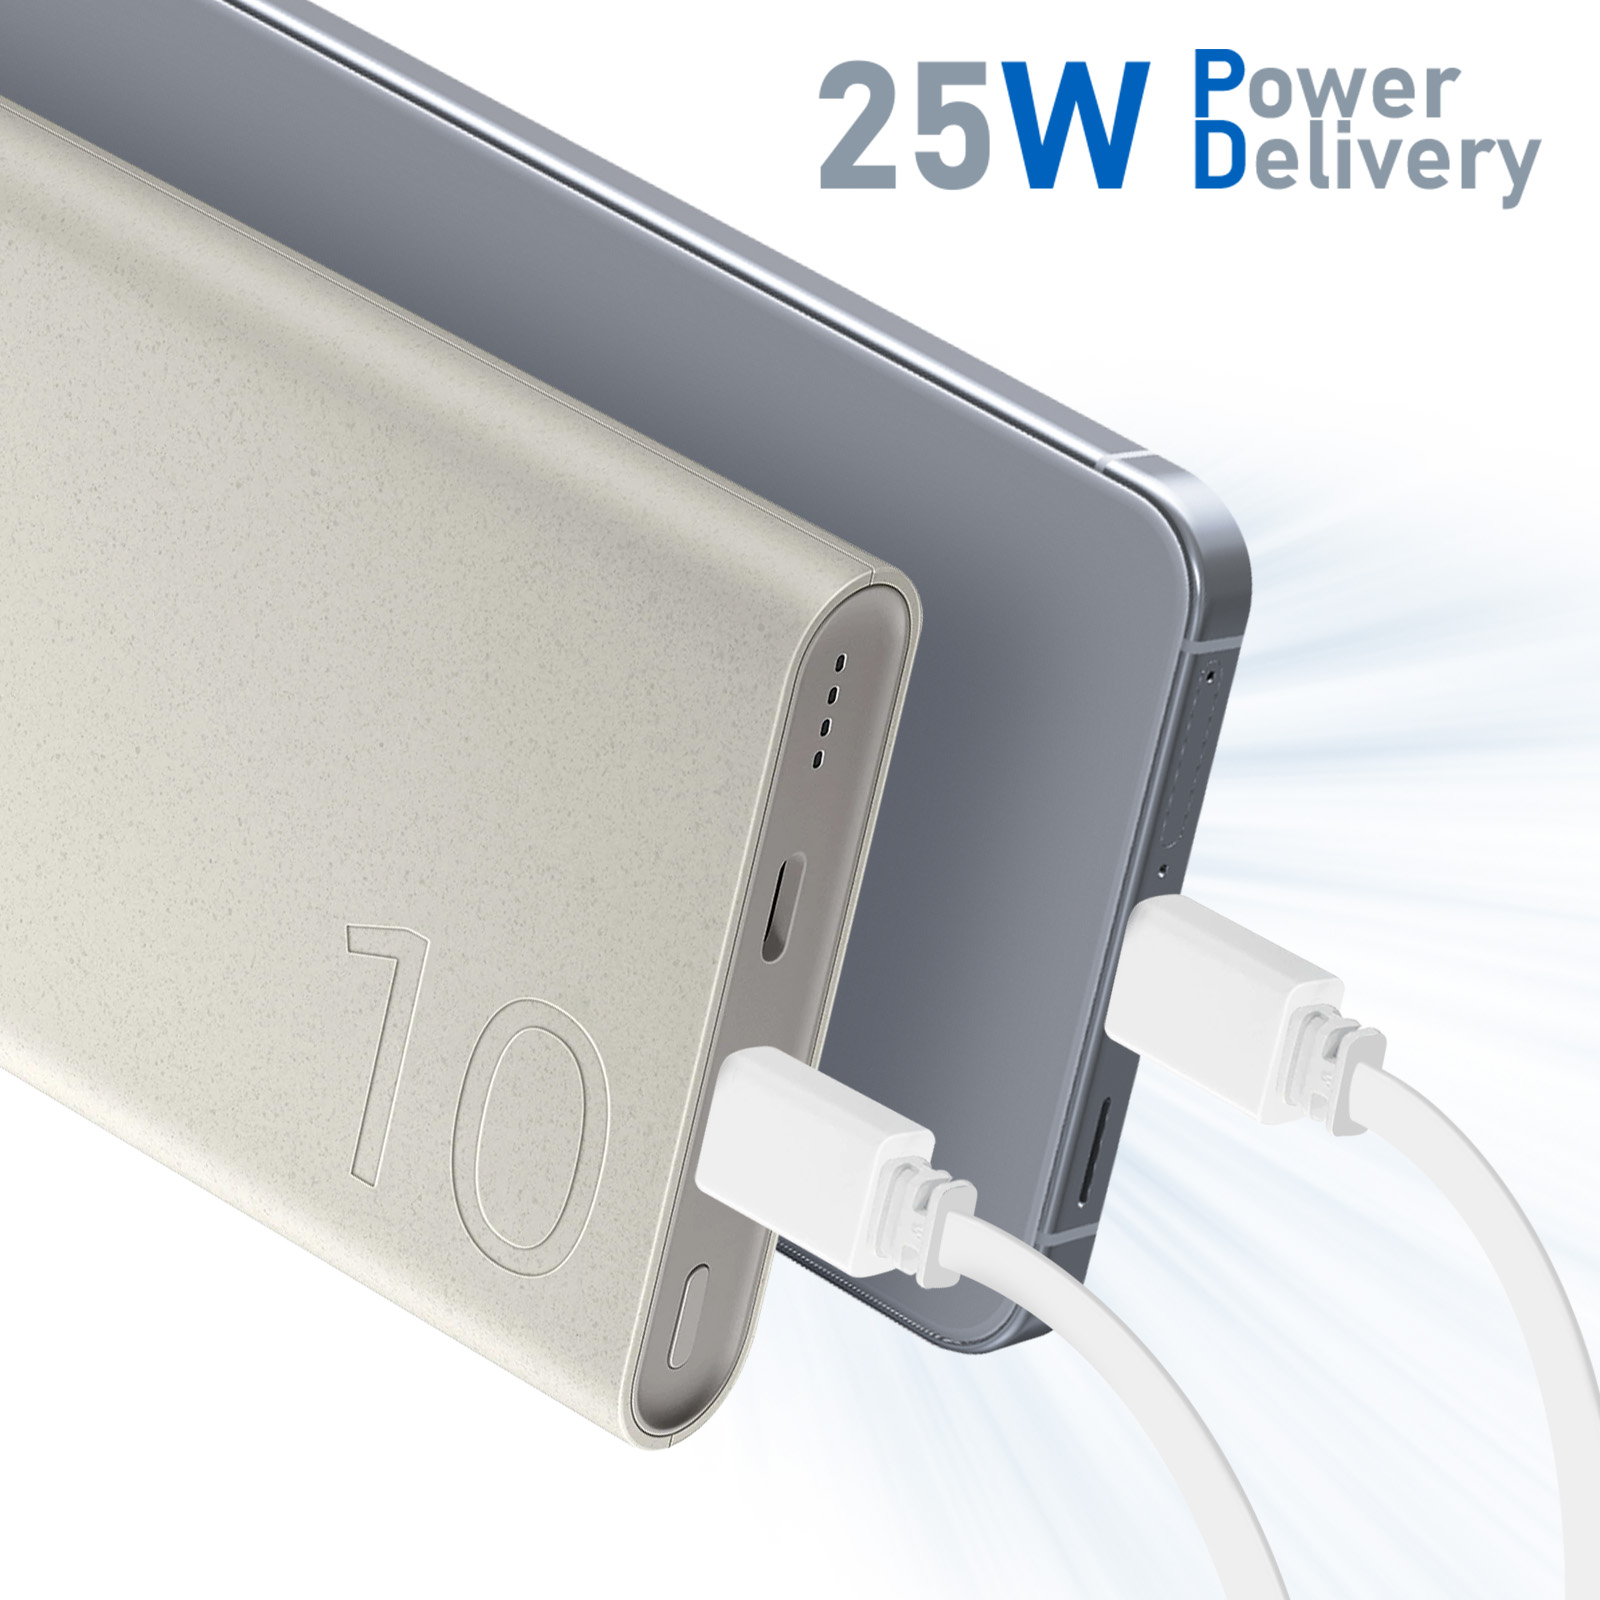 Batterie Externe Samsung Officiel USB-C 25W Super Fast Charging